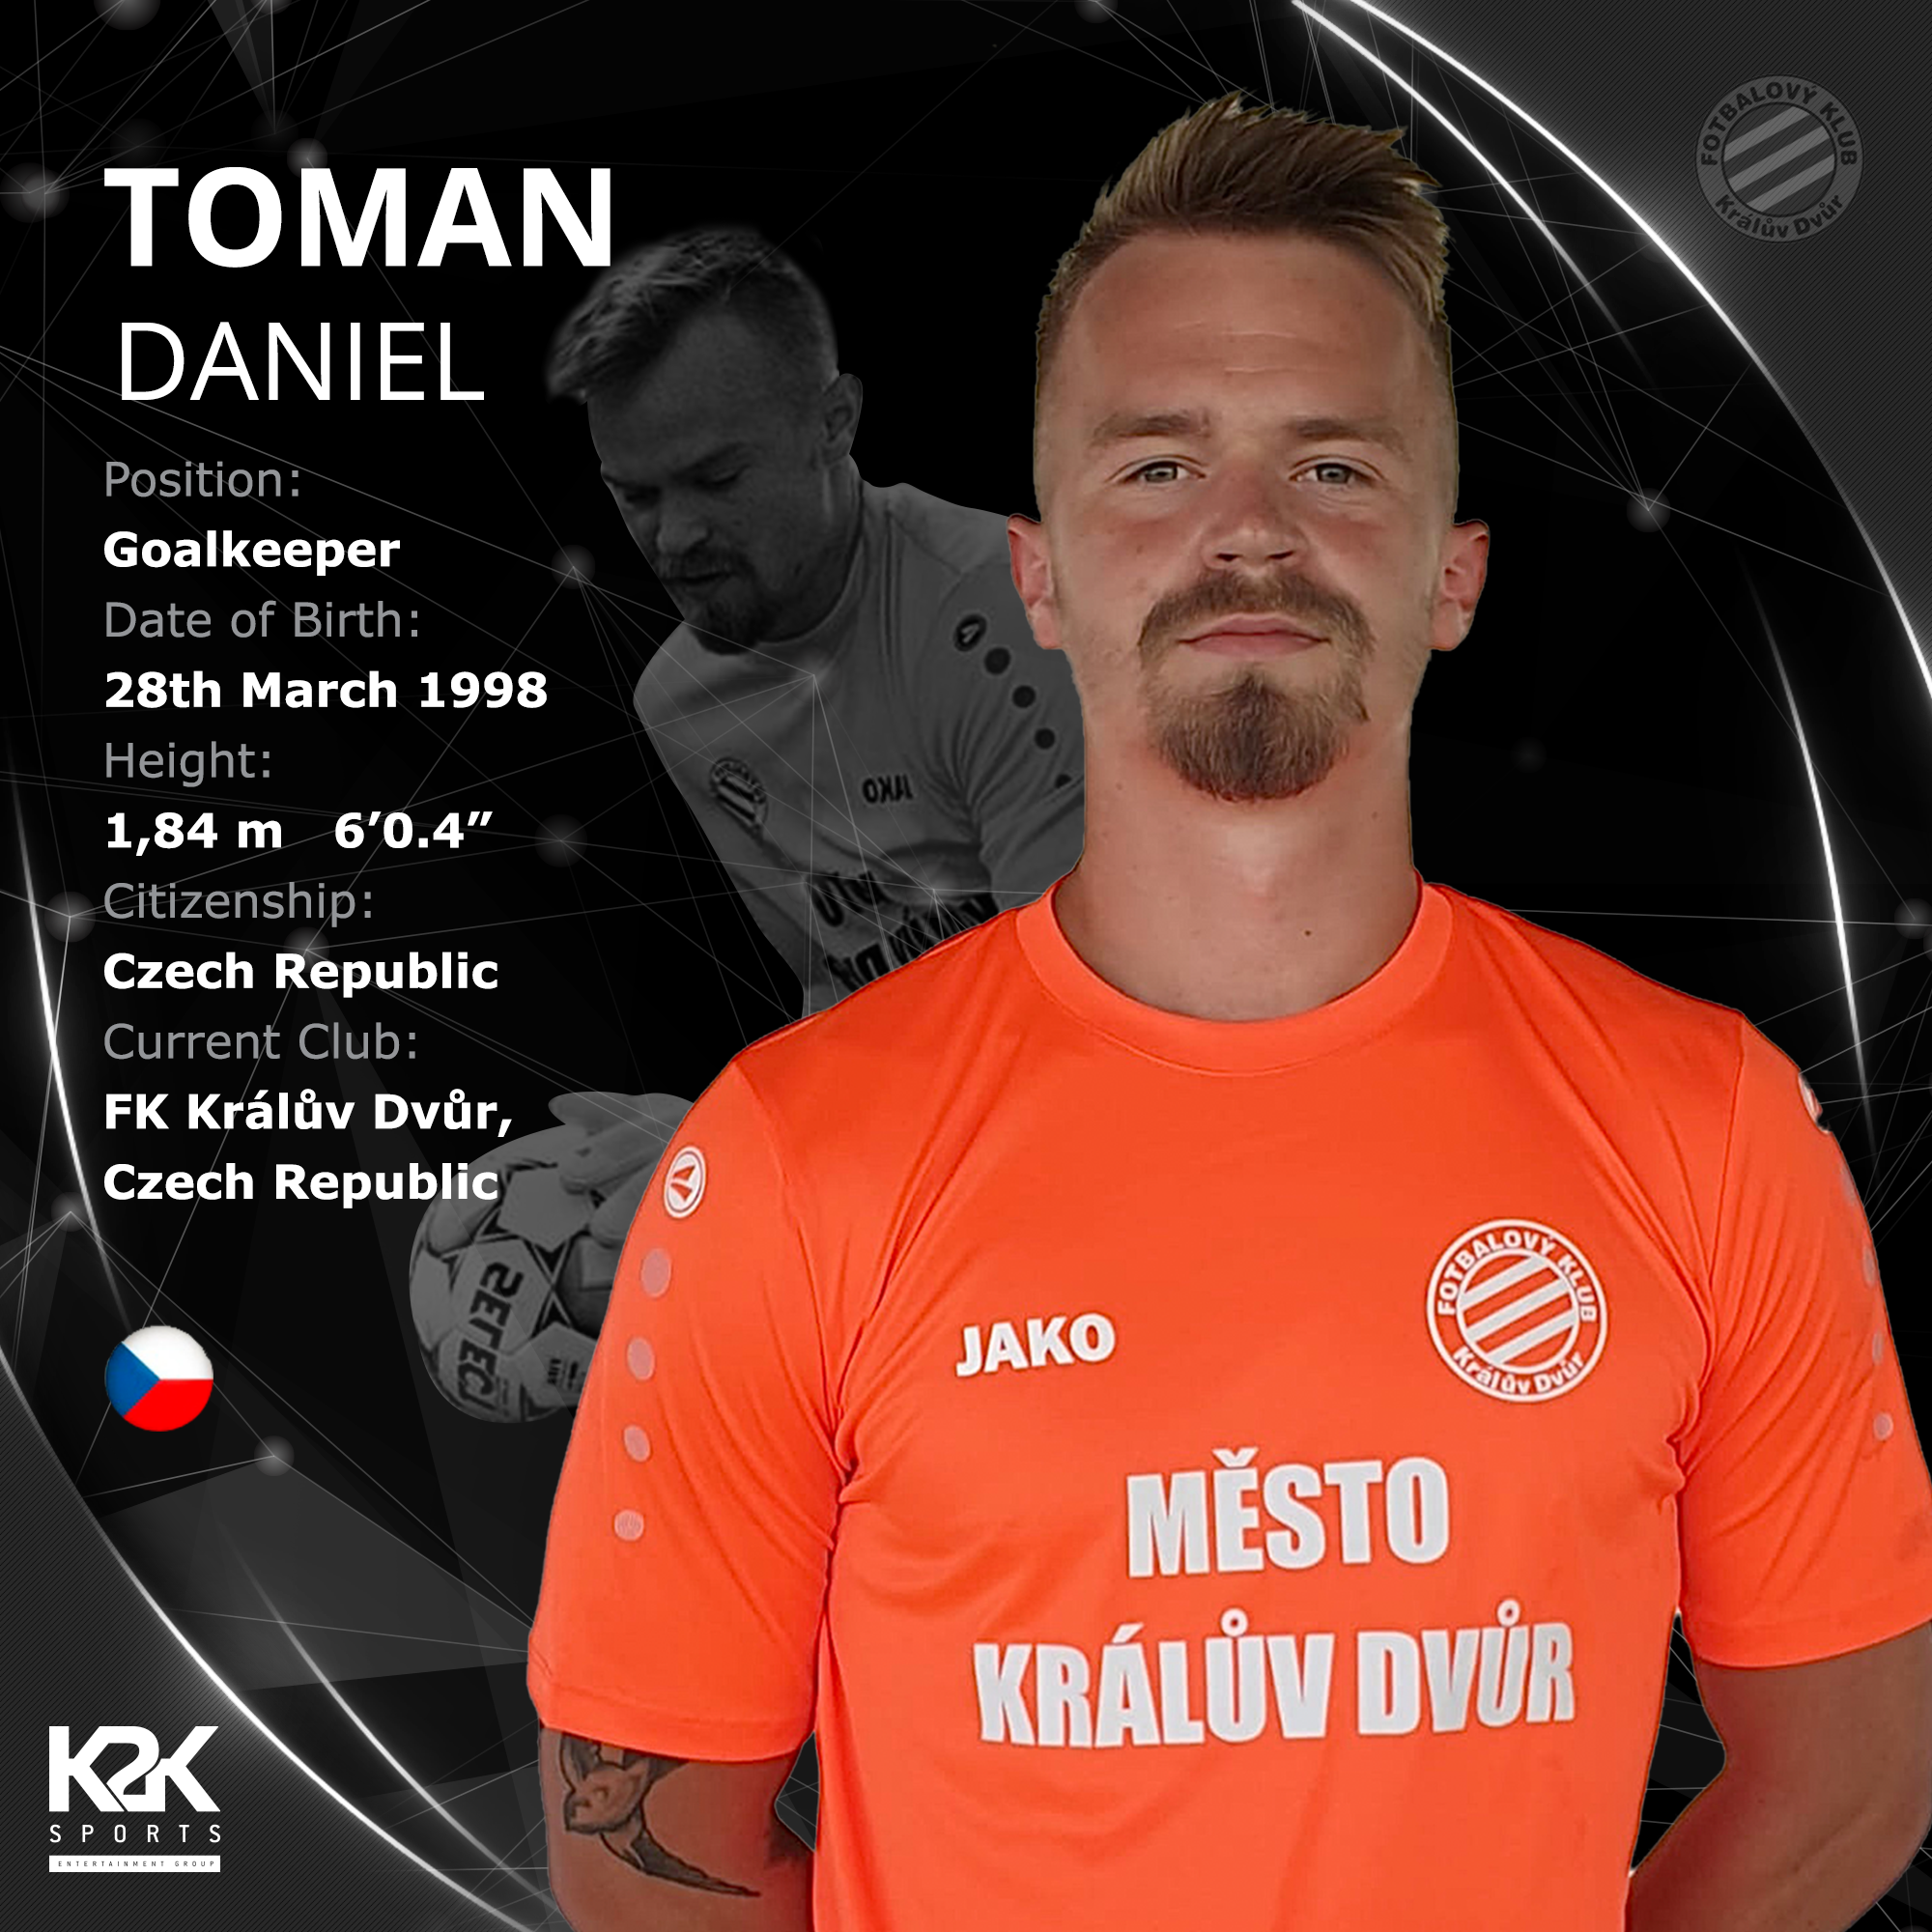 Daniel Toman